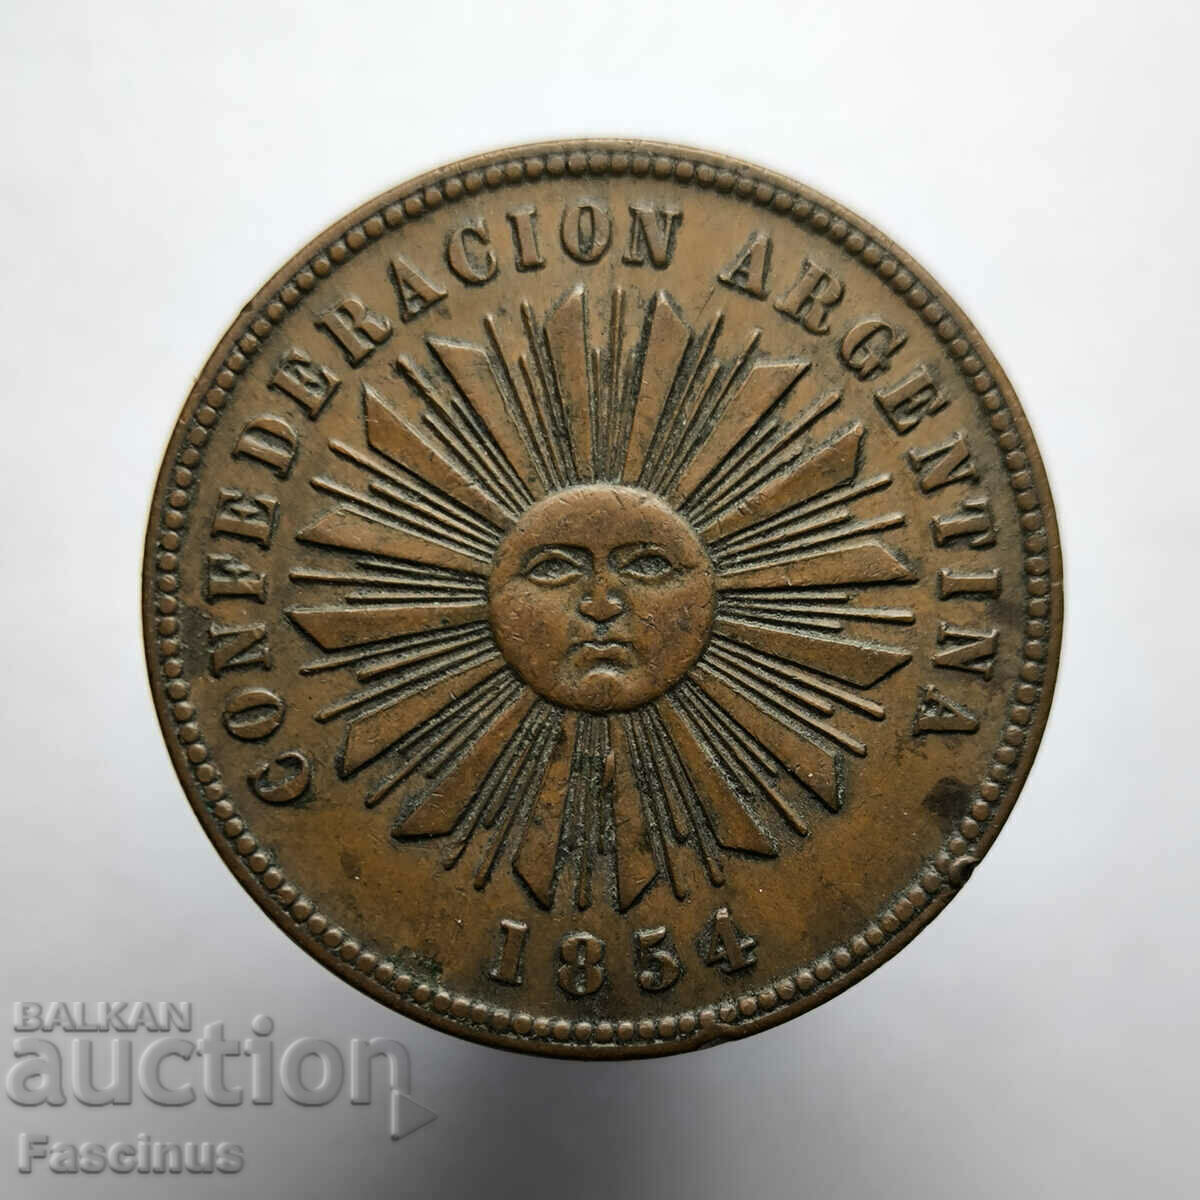 Σπάνιο χάλκινο νόμισμα 2 centavos 1854 Αργεντινή